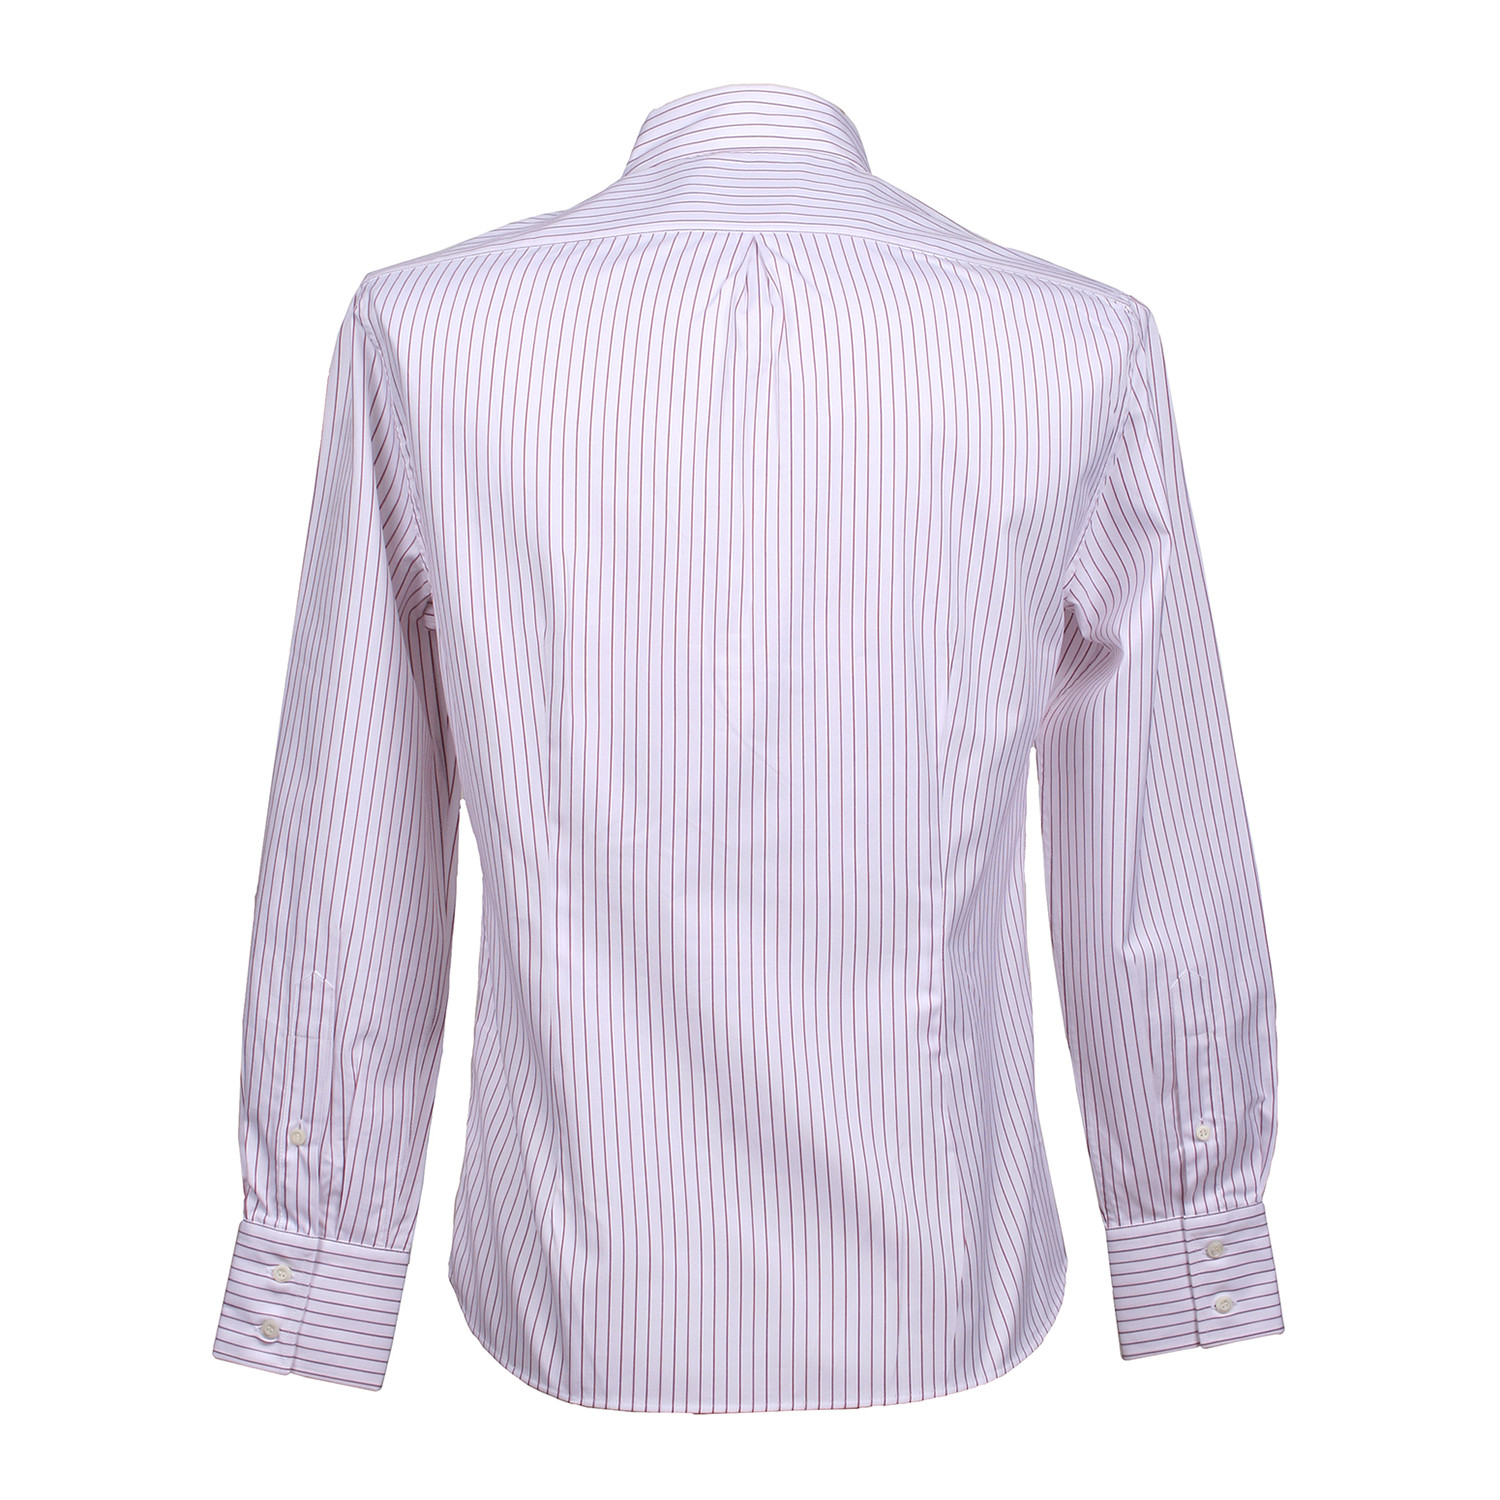 Brunello Cucinelli Striped Long Sleeve Dress Shirt